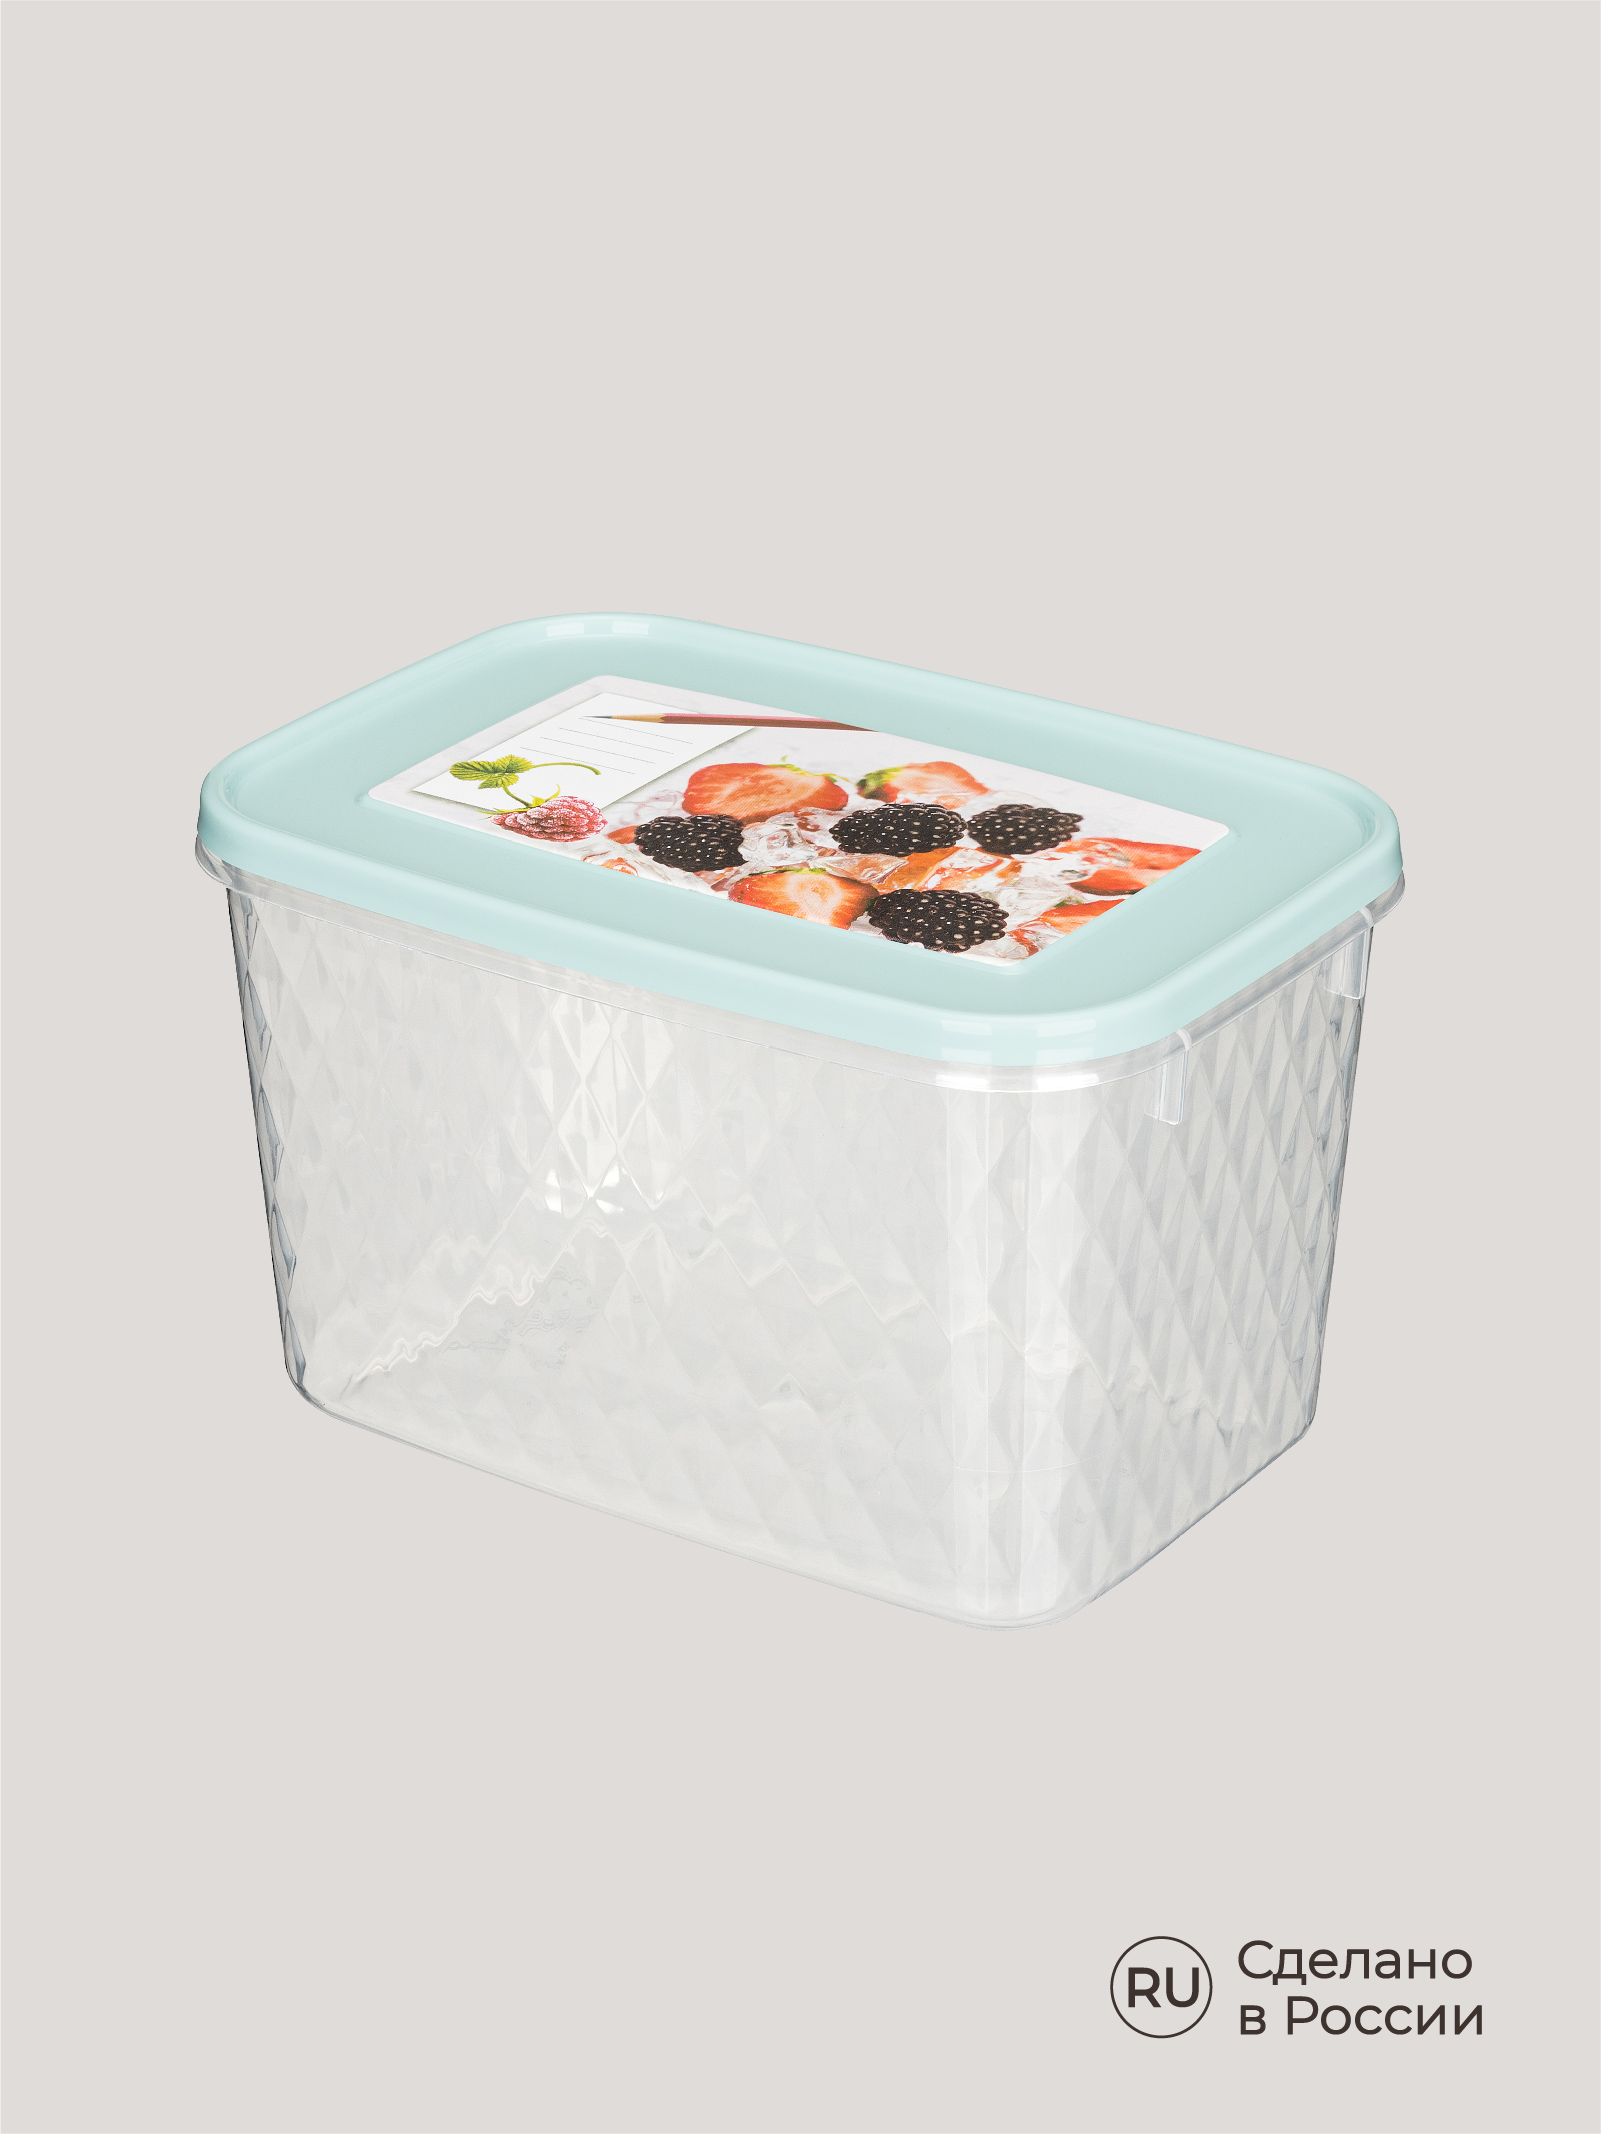 Контейнер Phibo для замораживания и хранения продуктов с декором Кристалл 1.7л светло-голубой - фото 7